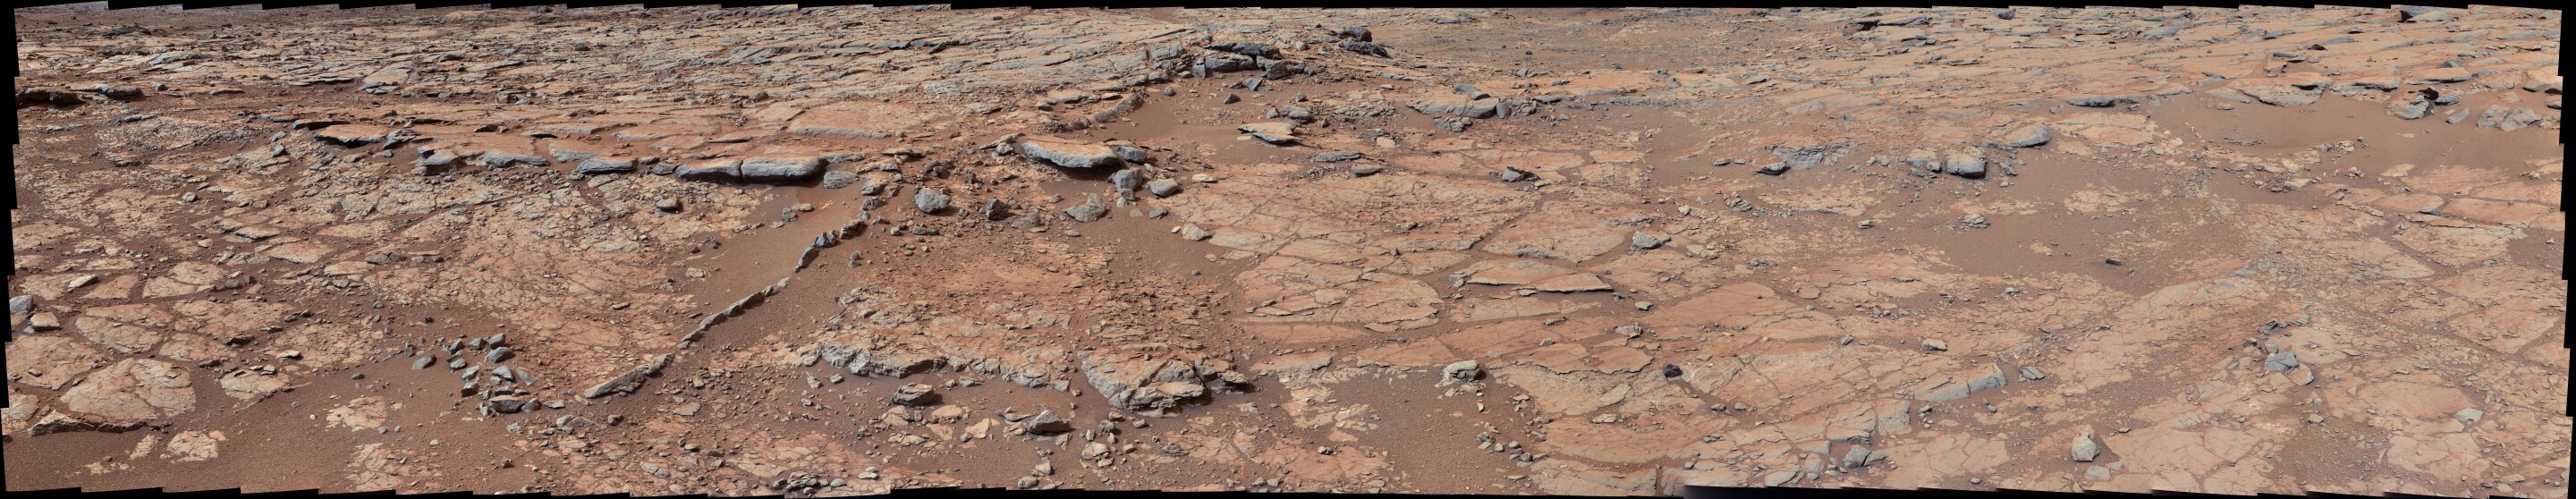 Łazik Curiosity przeprowadza inwentaryzację głównych elementów życia na Marsie